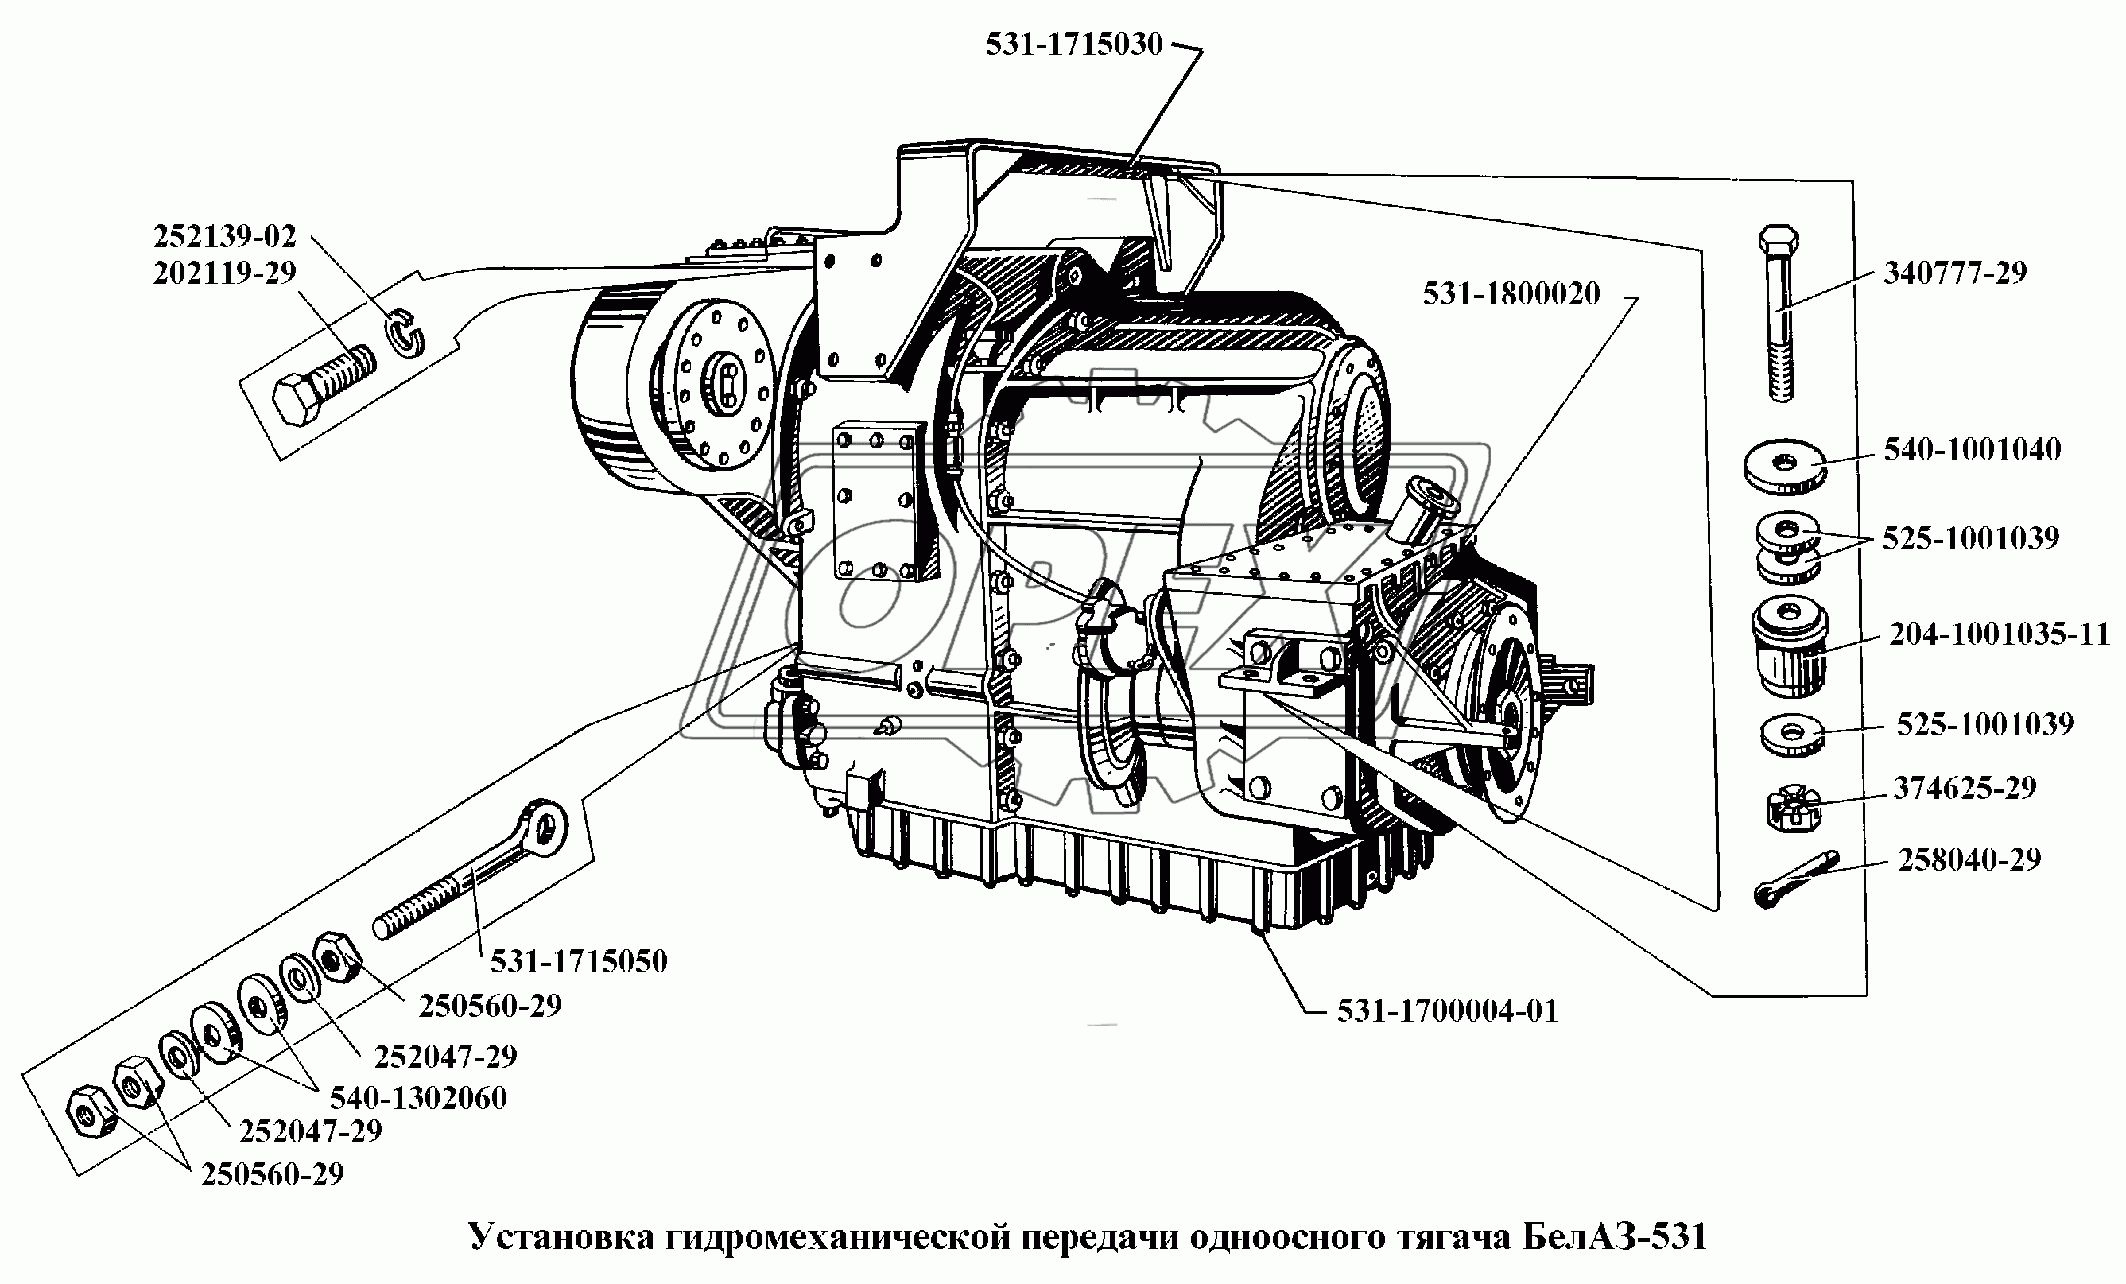 Установка гидромеханической передачи одноосного тягача БелАЗ-531